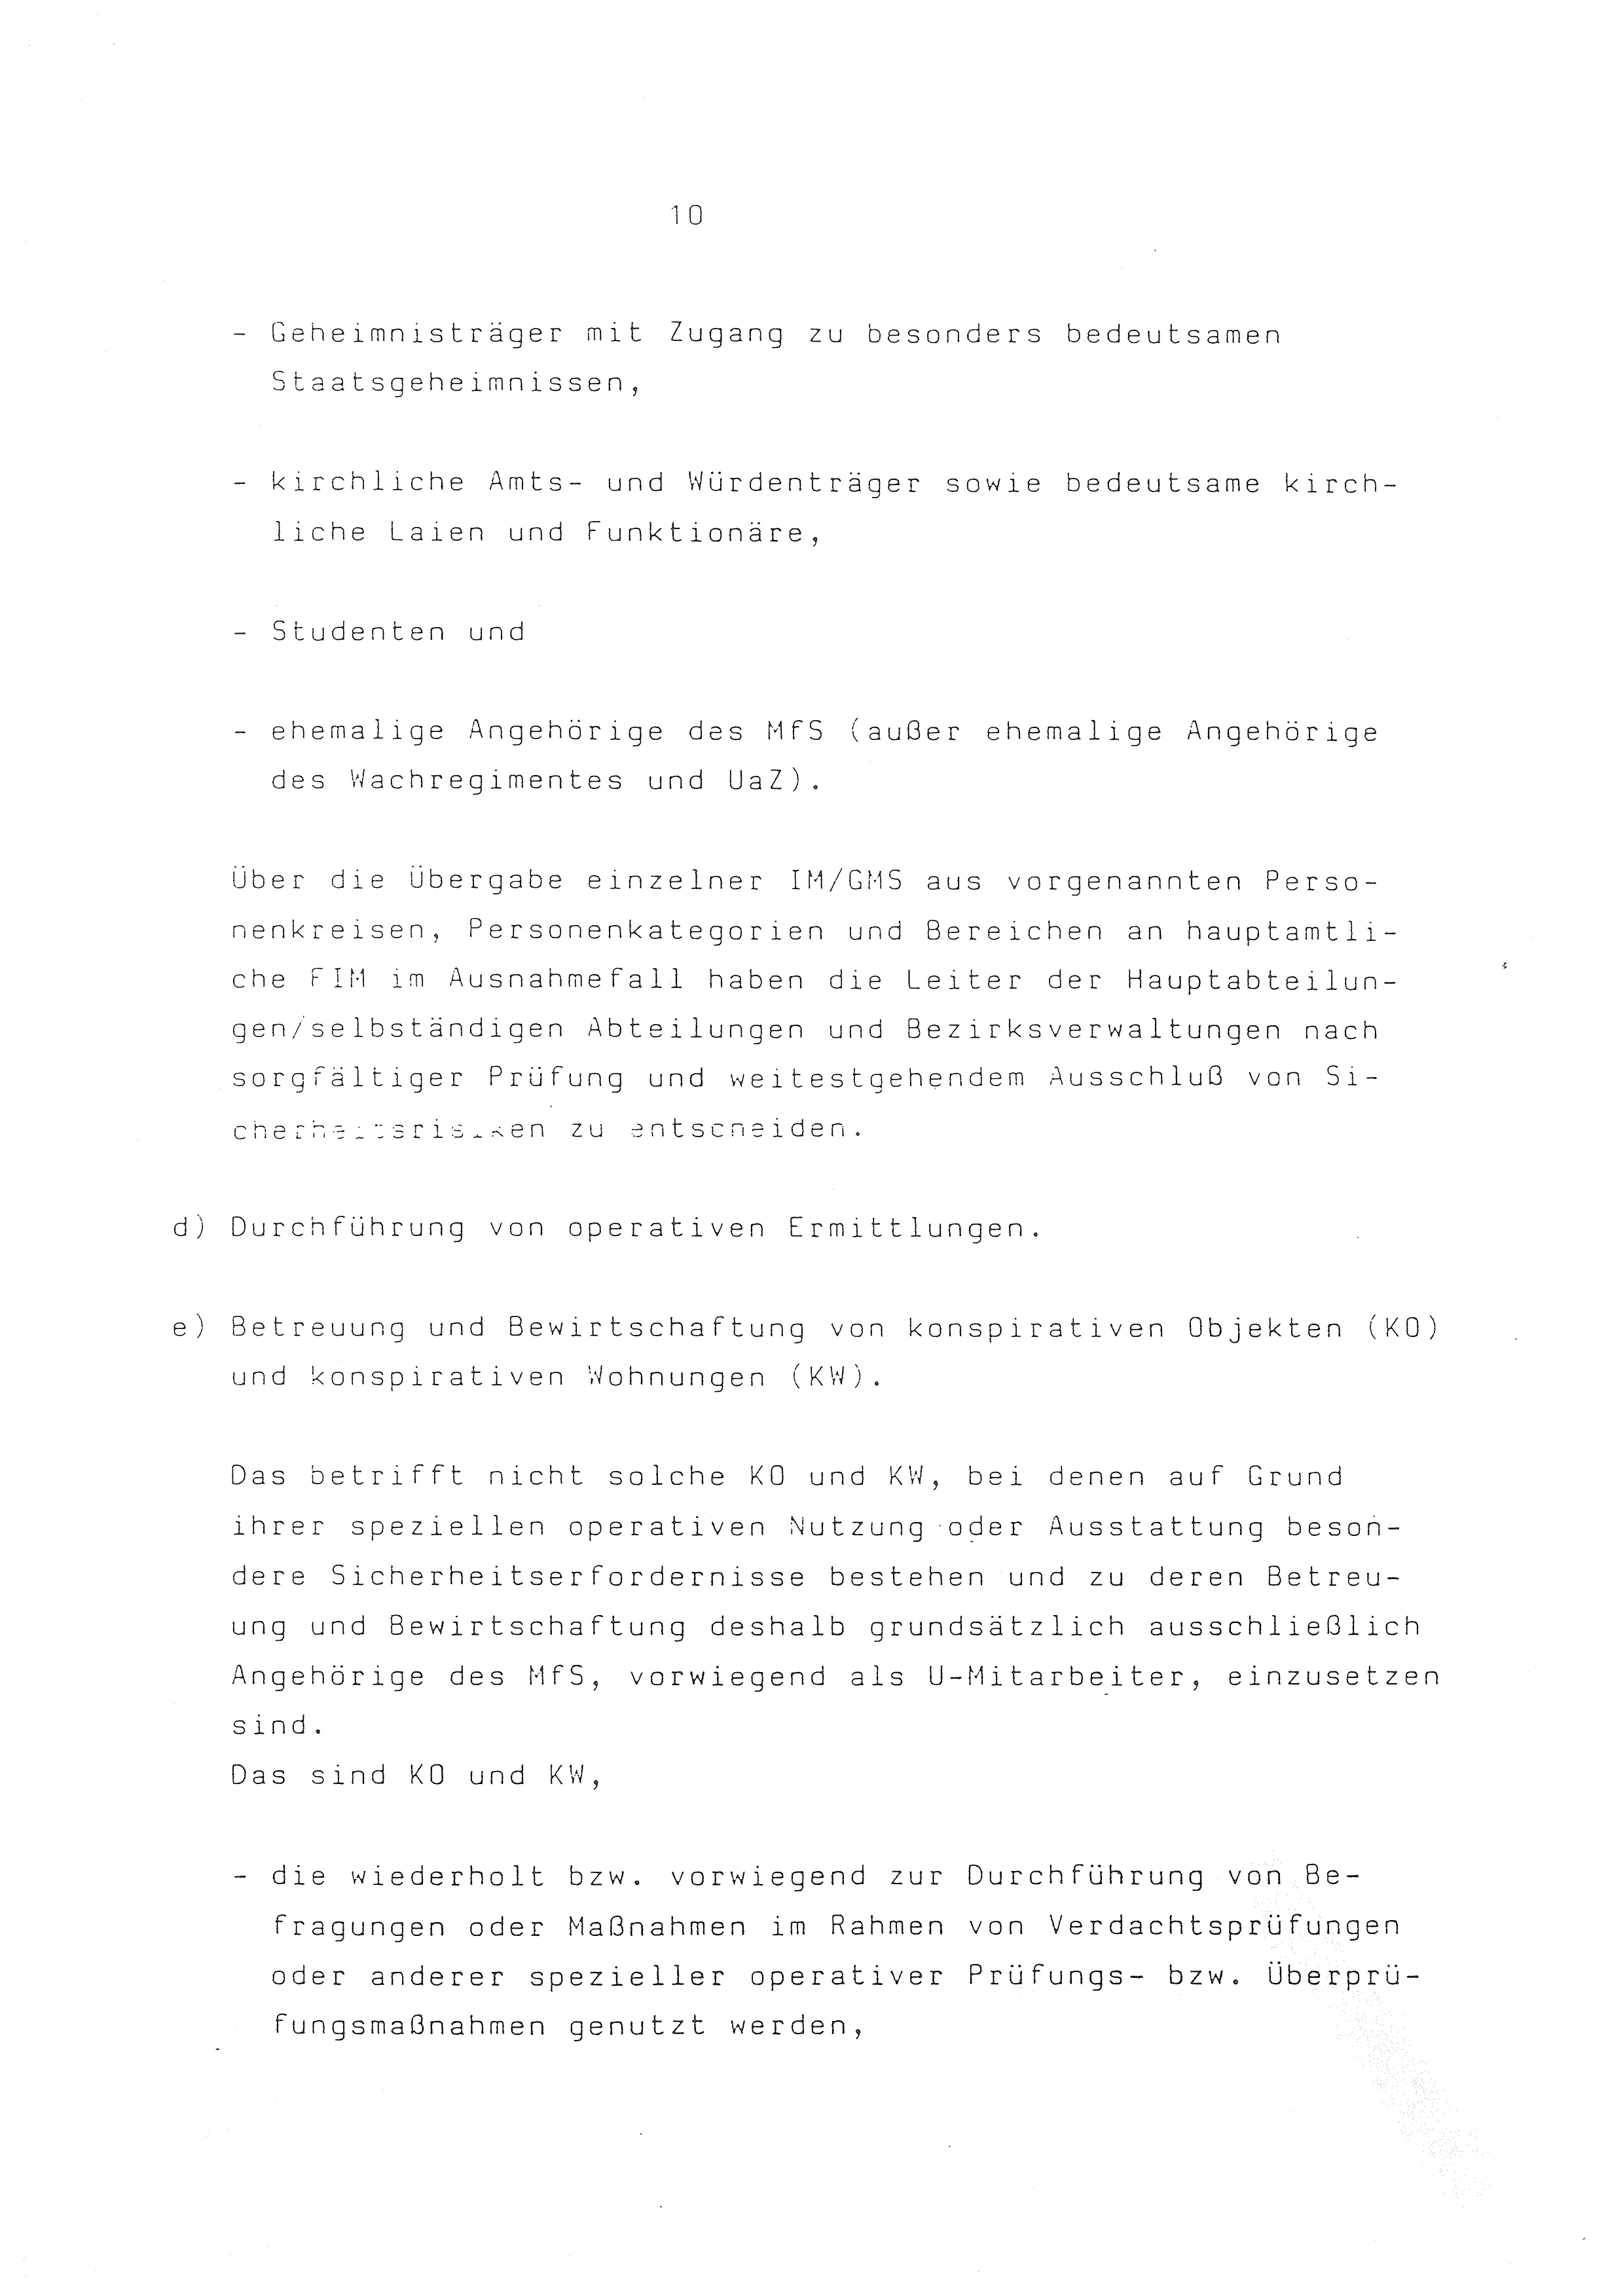 2. Durchführungsbestimmung zur Richtlinie 1/79 über die Arbeit mit hauptamtlichen Mitarbeitern des MfS (HIM), Deutsche Demokratische Republik (DDR), Ministerium für Staatssicherheit (MfS), Der Minister (Mielke), Geheime Verschlußsache (GVS) ooo8-44/86, Berlin 1986, Seite 10 (2. DB RL 1/79 DDR MfS Min. GVS ooo8-44/86 1986, S. 10)